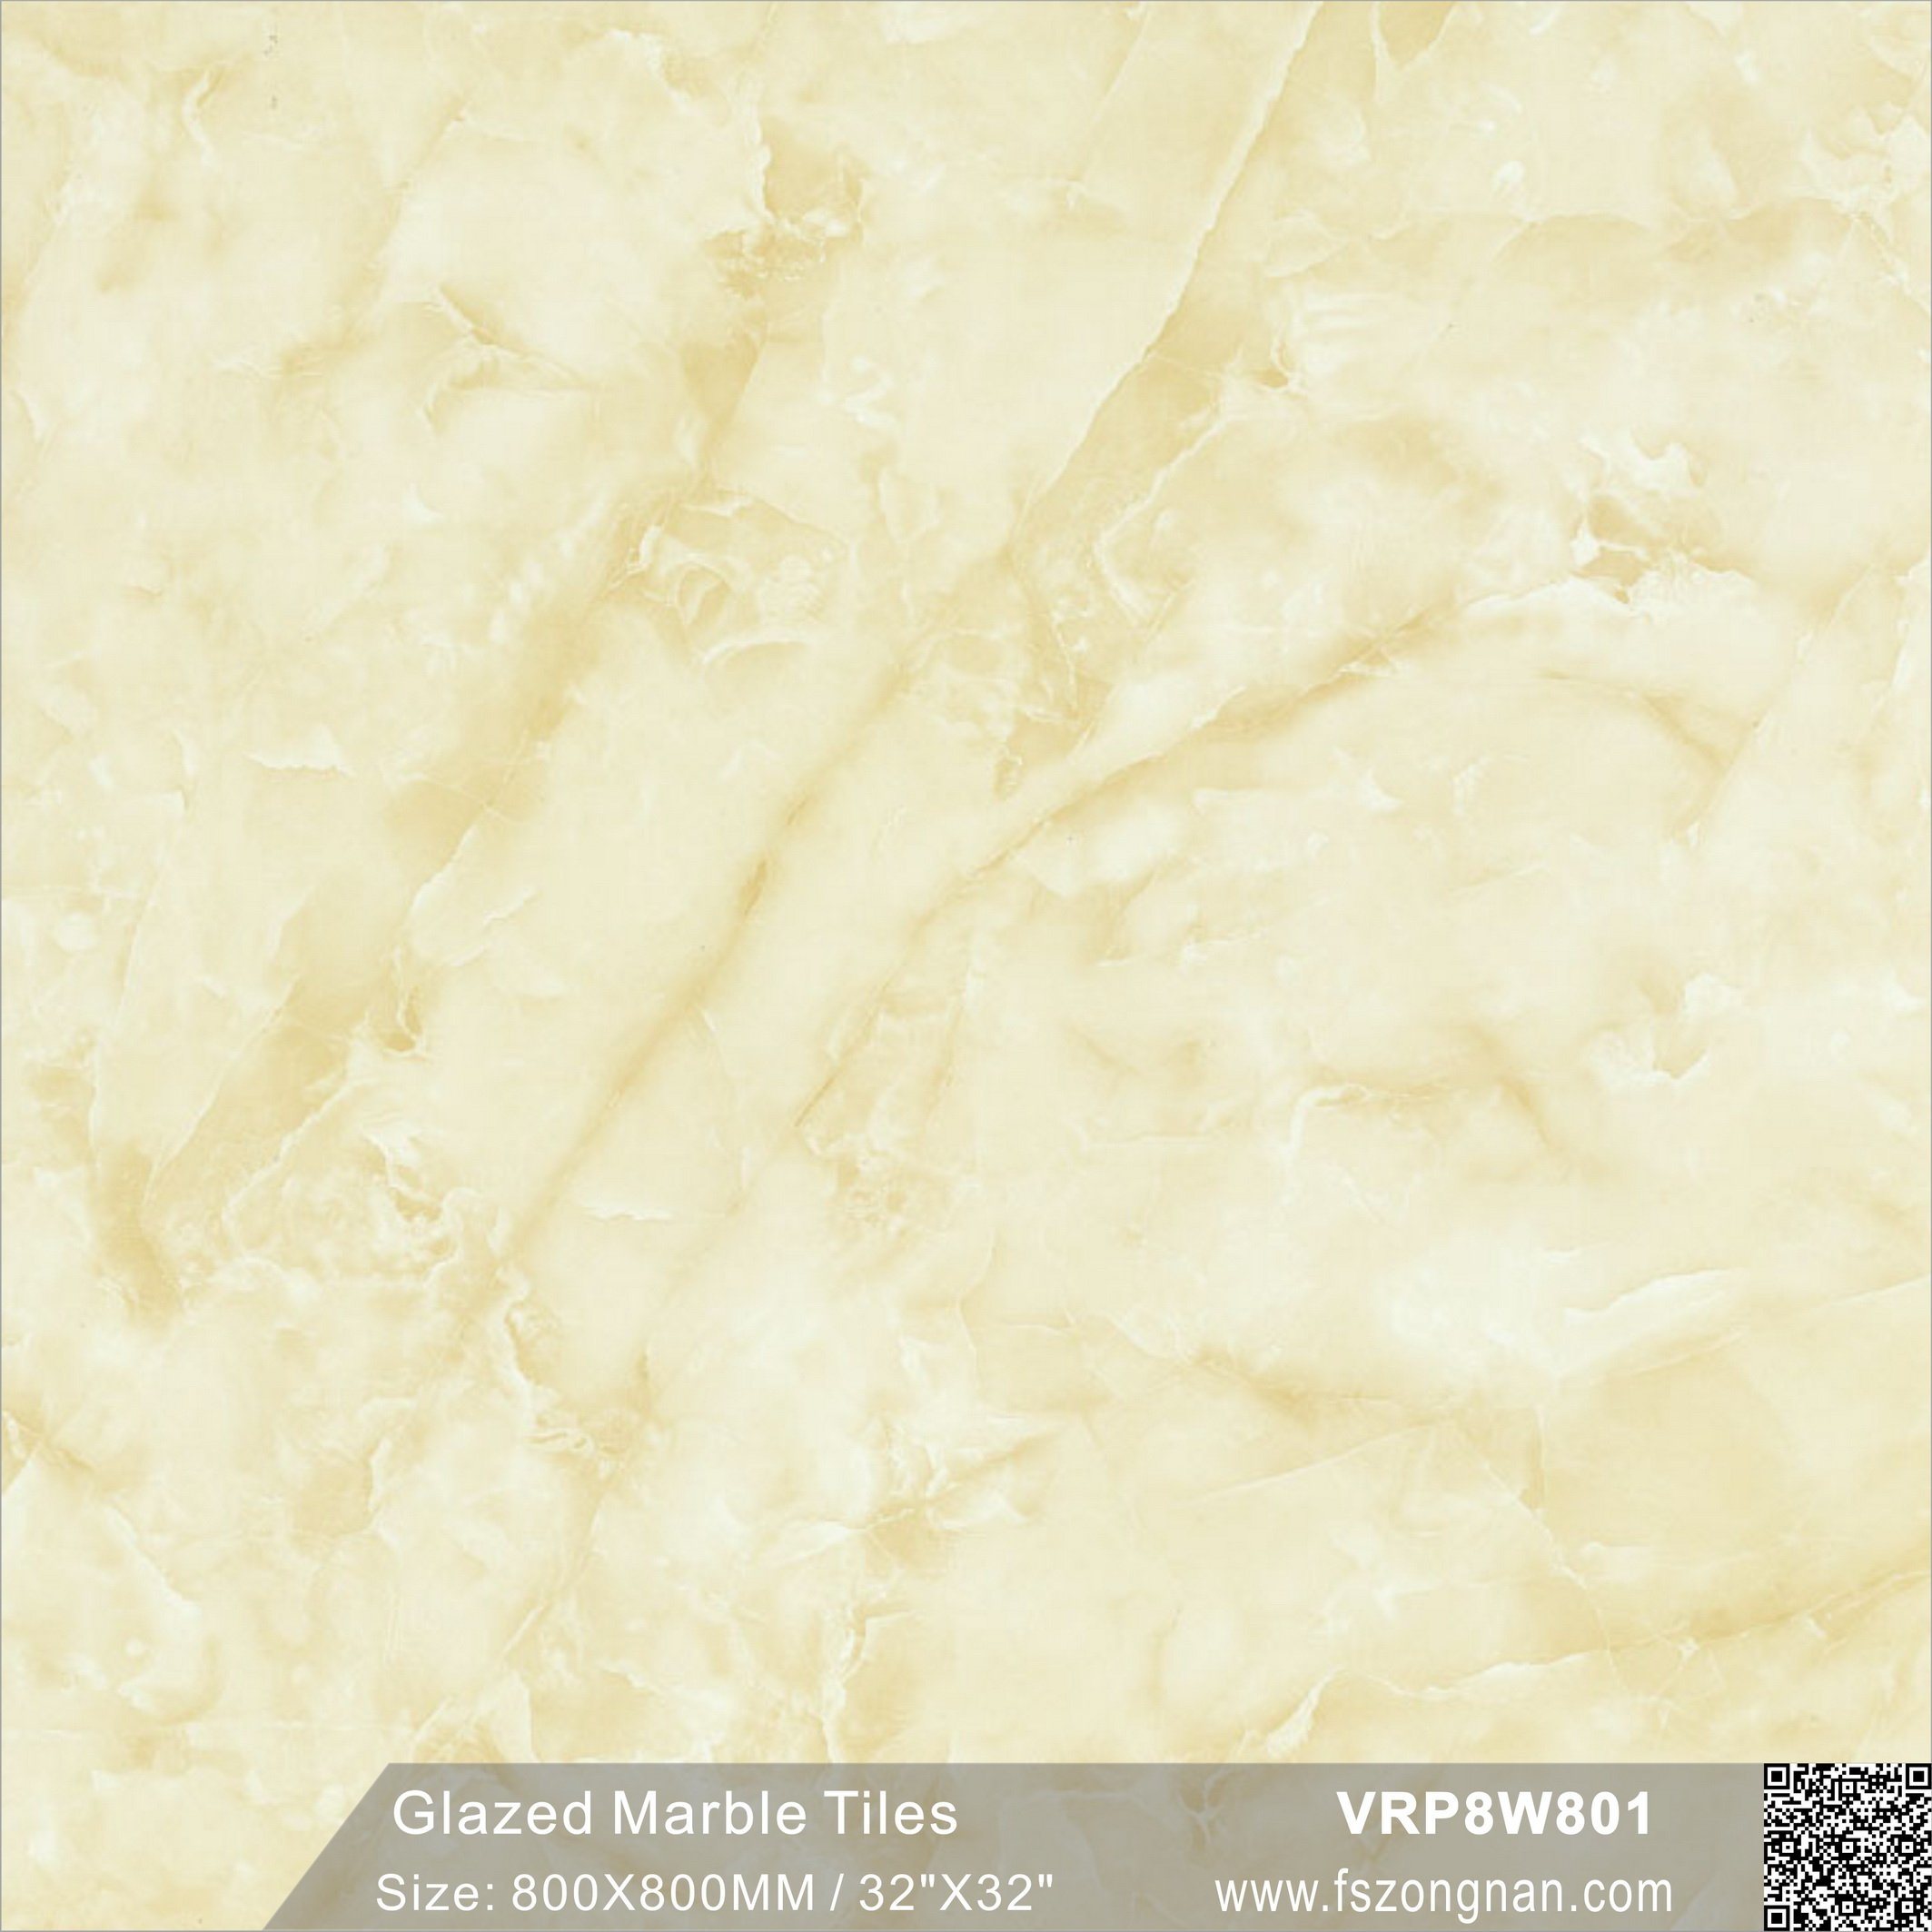 Building Material Glazed Marble Polished Porcelain Bathroom Floor Tile (VRP8W801, 800X800mm)